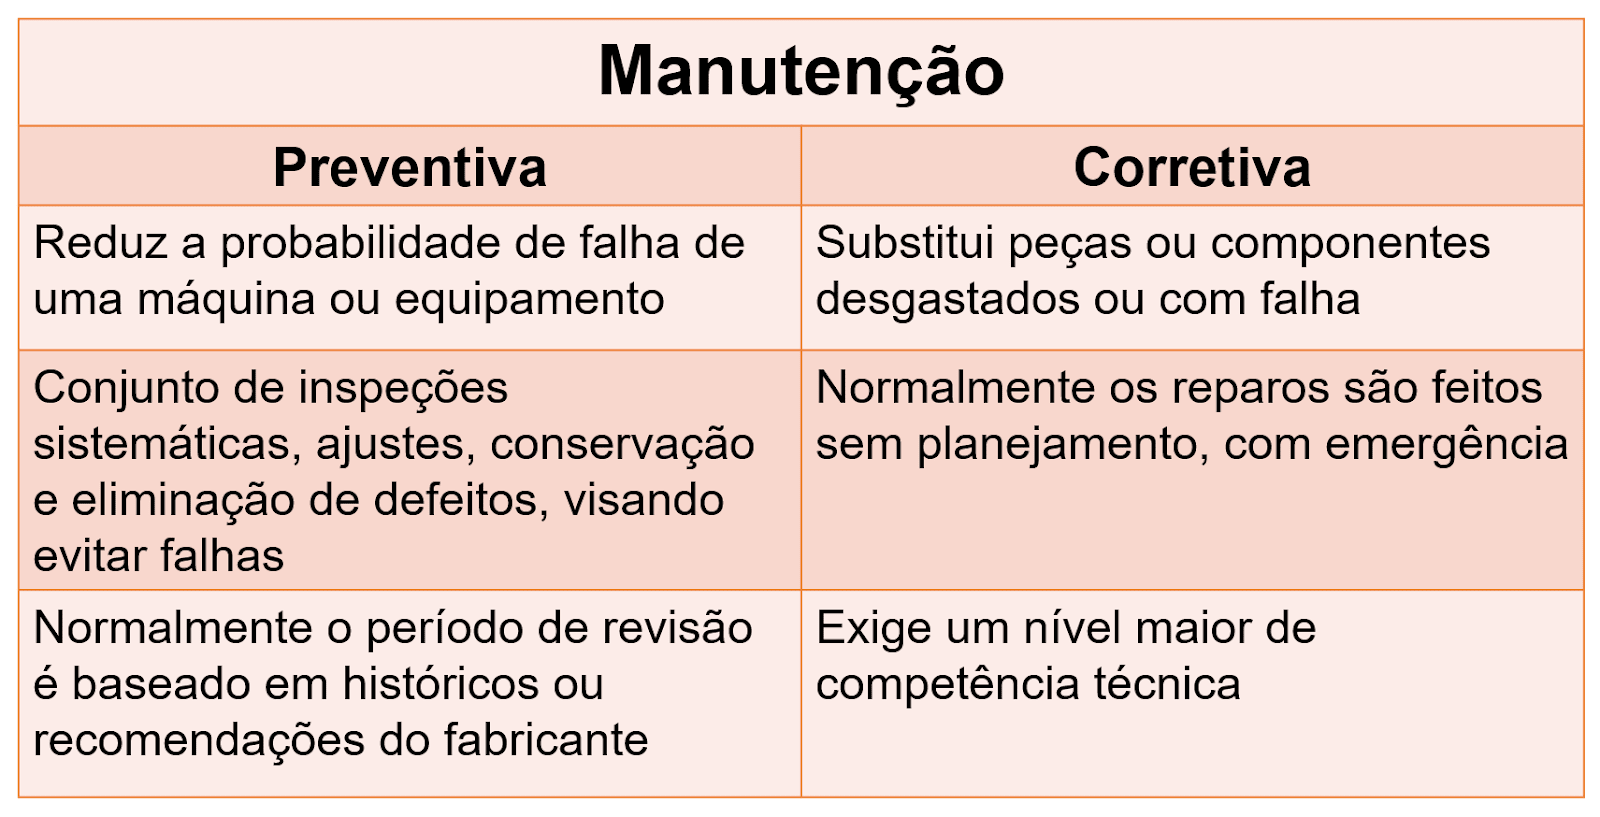 Tabela de comparação entre manutenção preventiva e corretiva